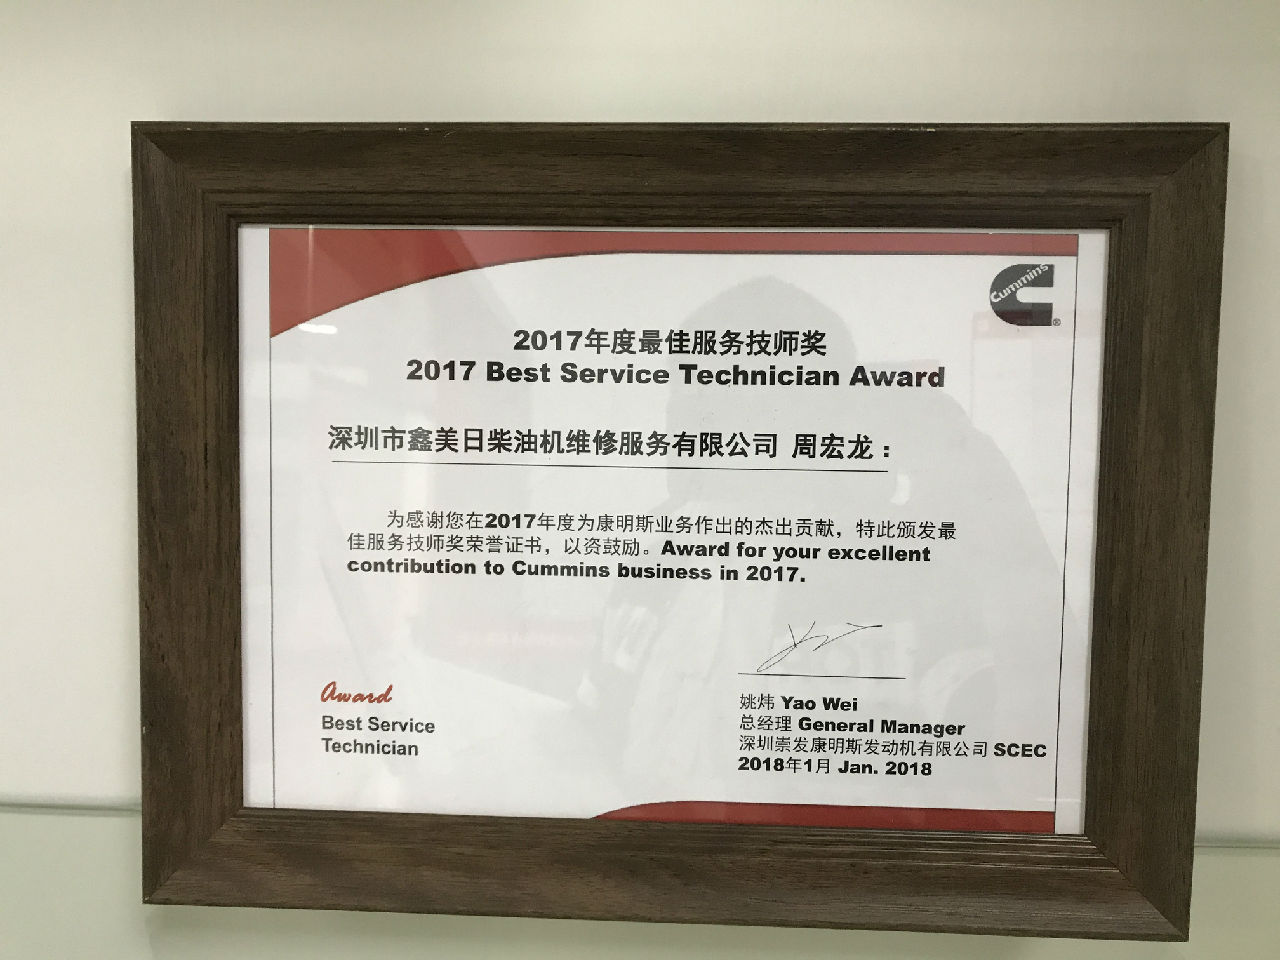 2017年度最佳服務技師獎 周宏龍_c